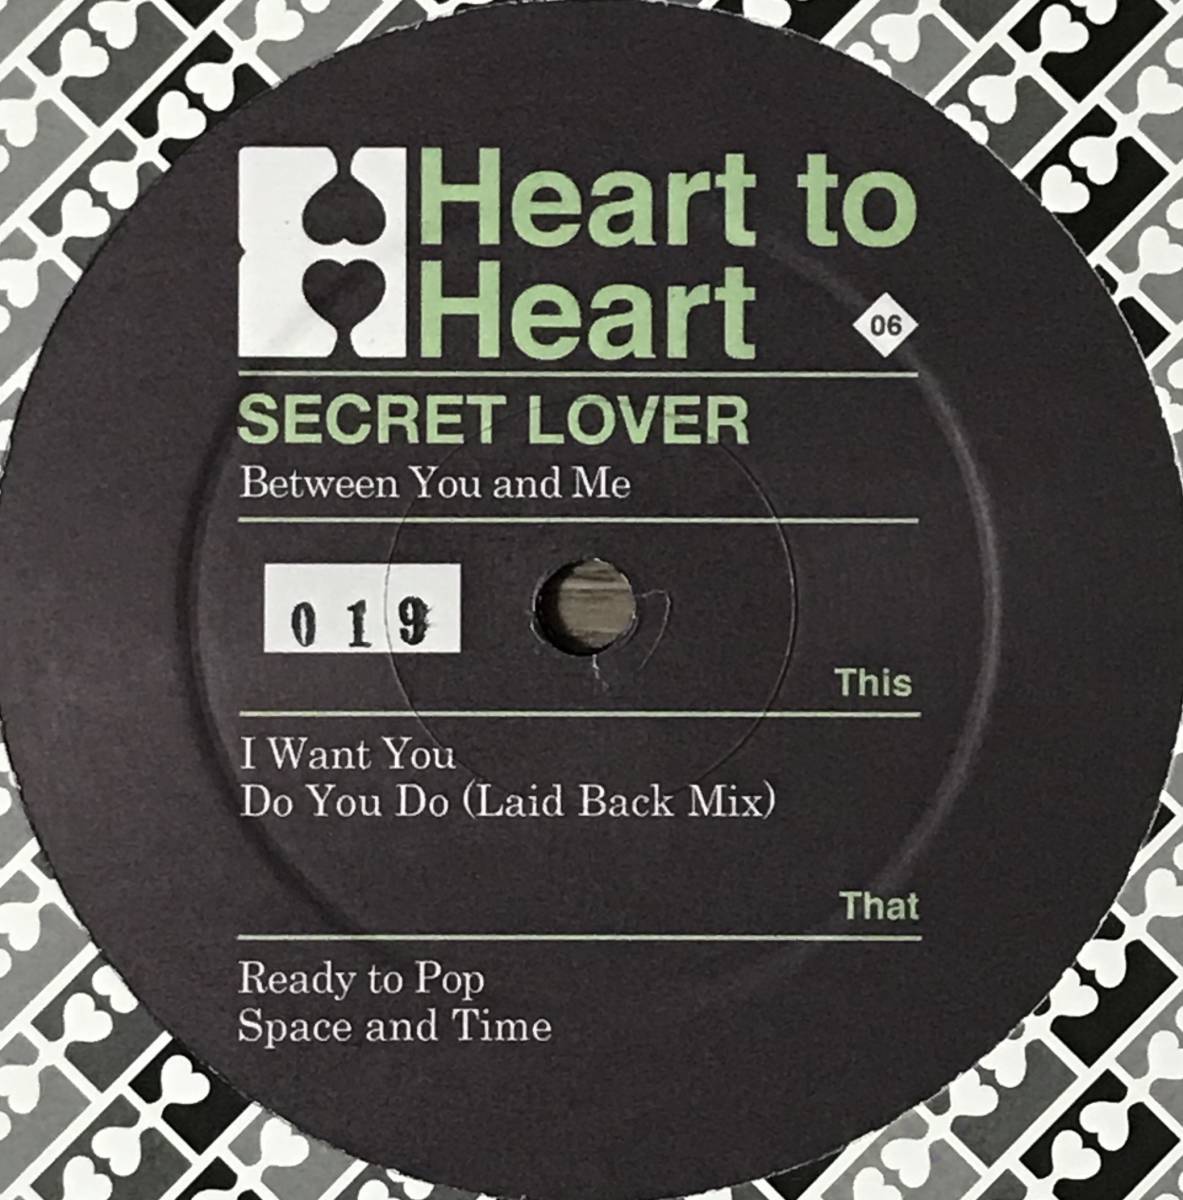 [12/レコード] Secret Lover - Between You and Me (Deep House) ☆Heart To Heart アーバンディープハウス!_画像2